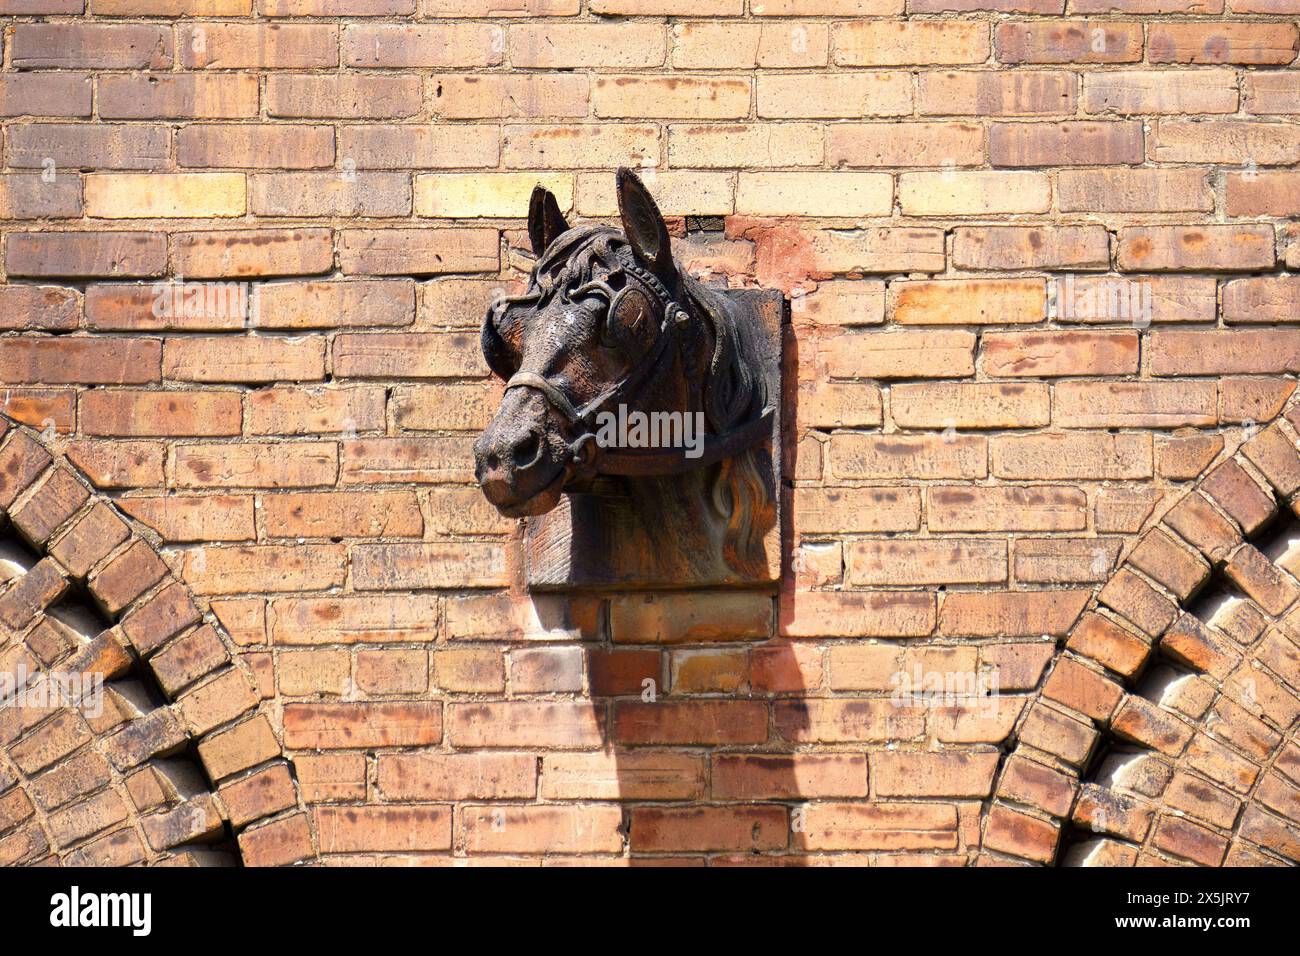 Scultura in metallo della testa di cavallo, muro in mattoni dell'edificio coloniale, Bloor Street, Toronto, Canada Foto Stock